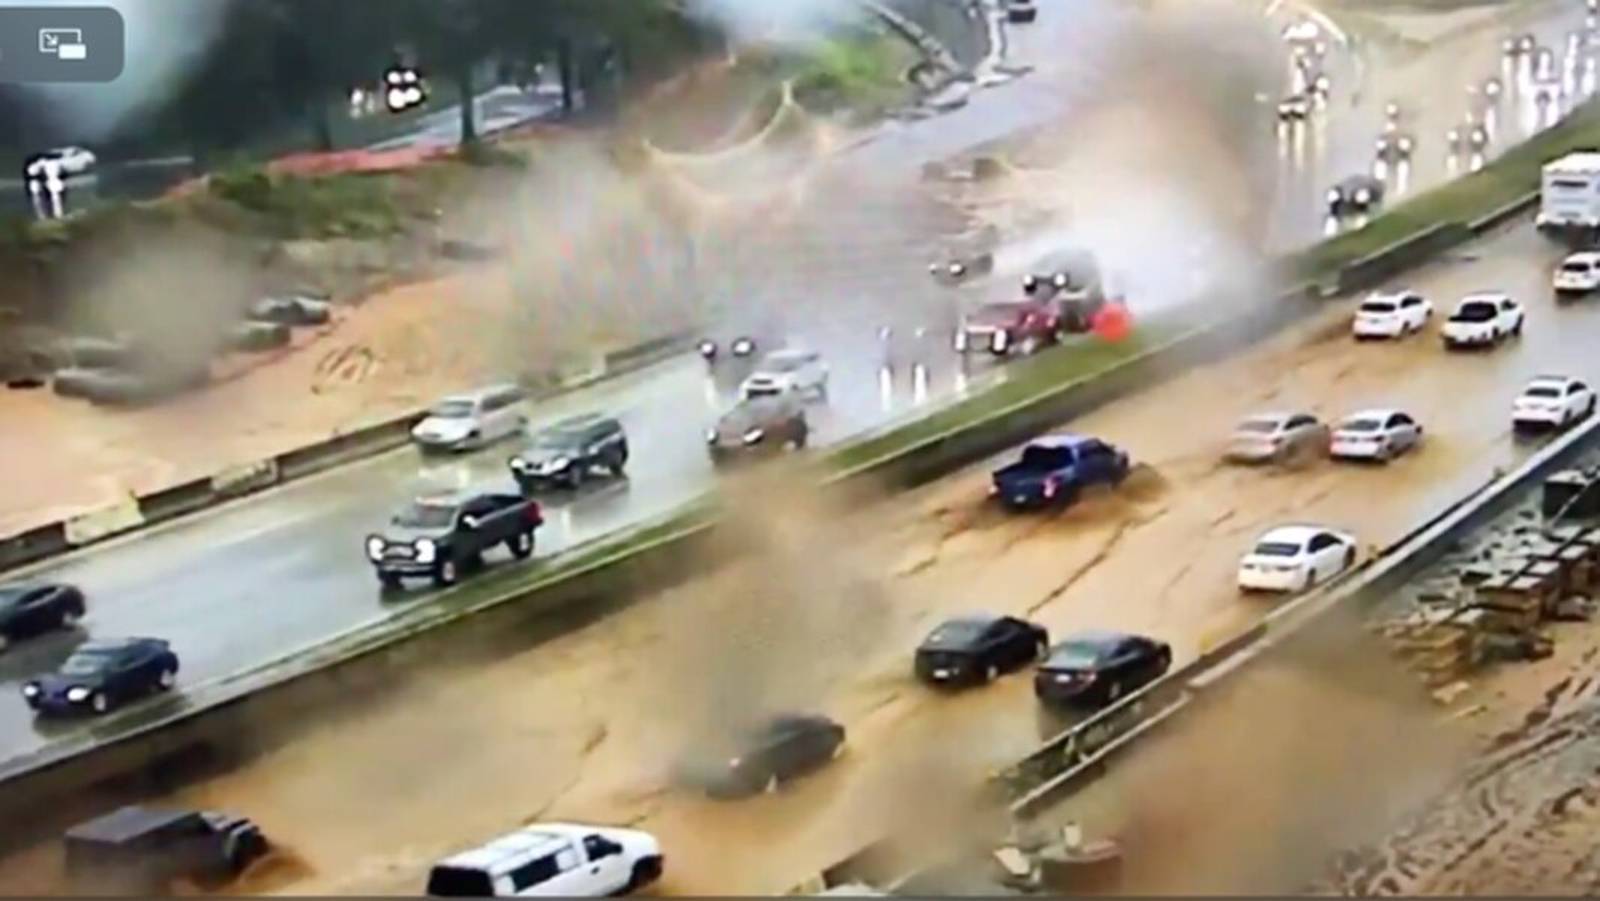 Flooding reported on Ga. 400, I75 and I285 amid heavy rain in Atlanta